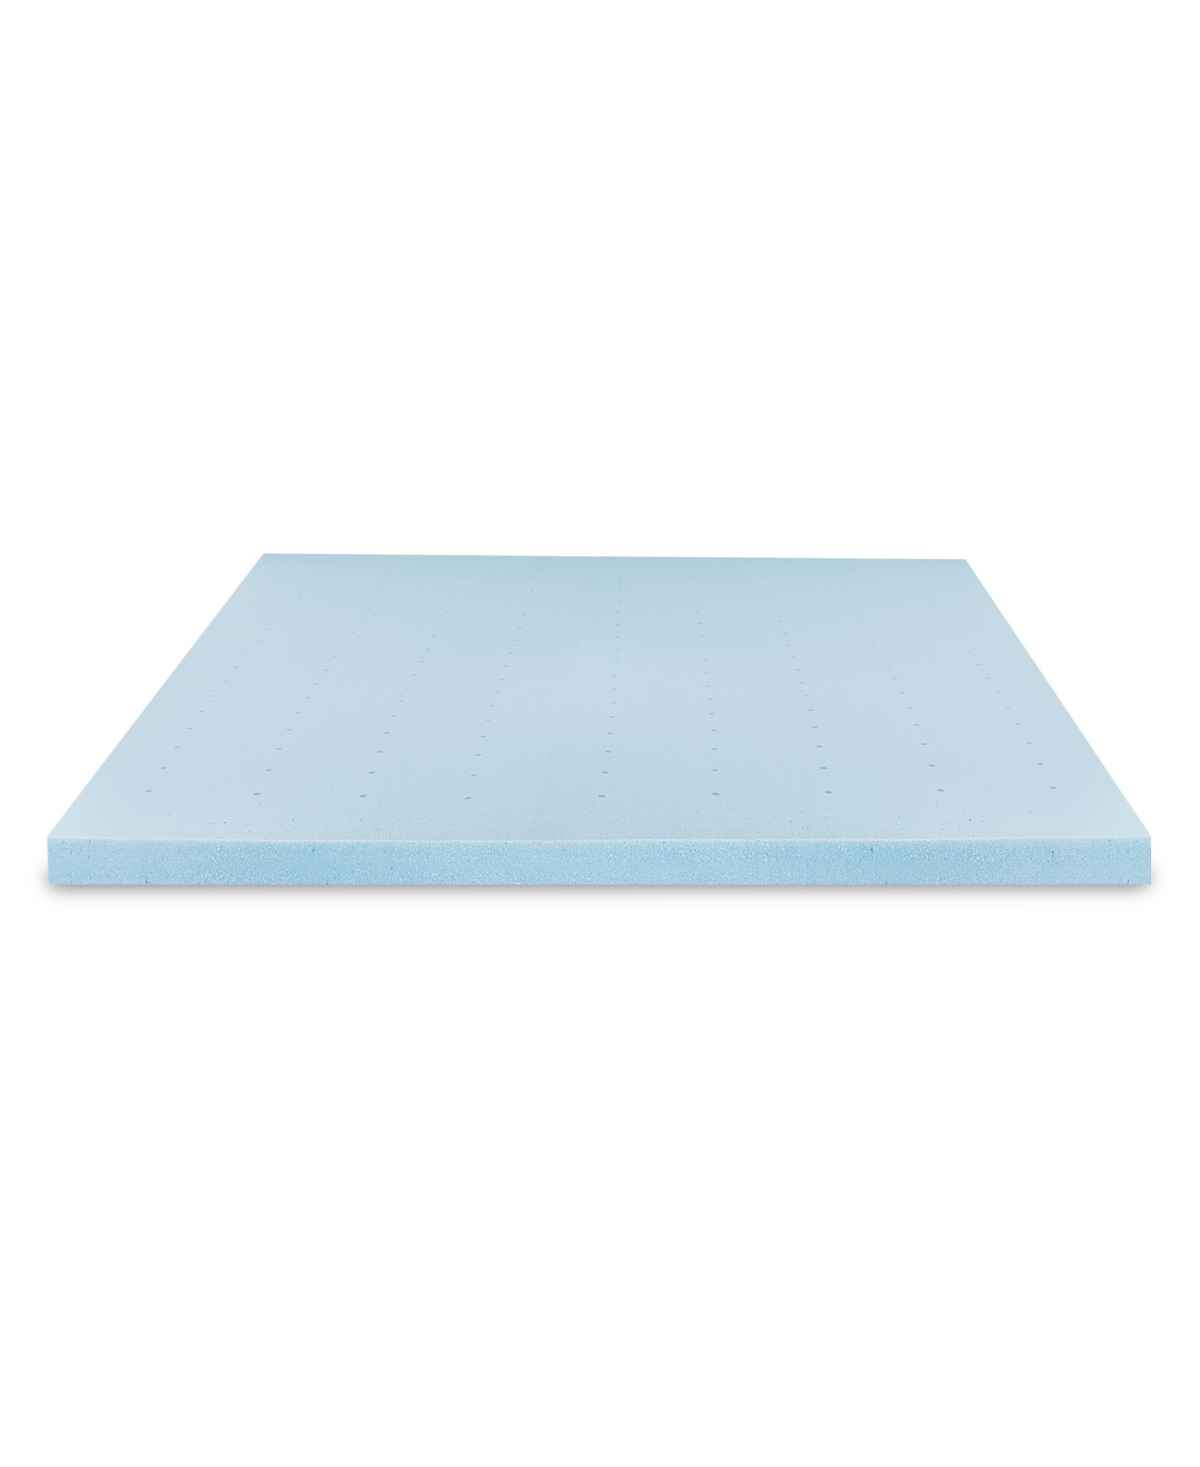 Prosleep Gel-infused 3" Memory Foam Mattress Topper, Full In Blue